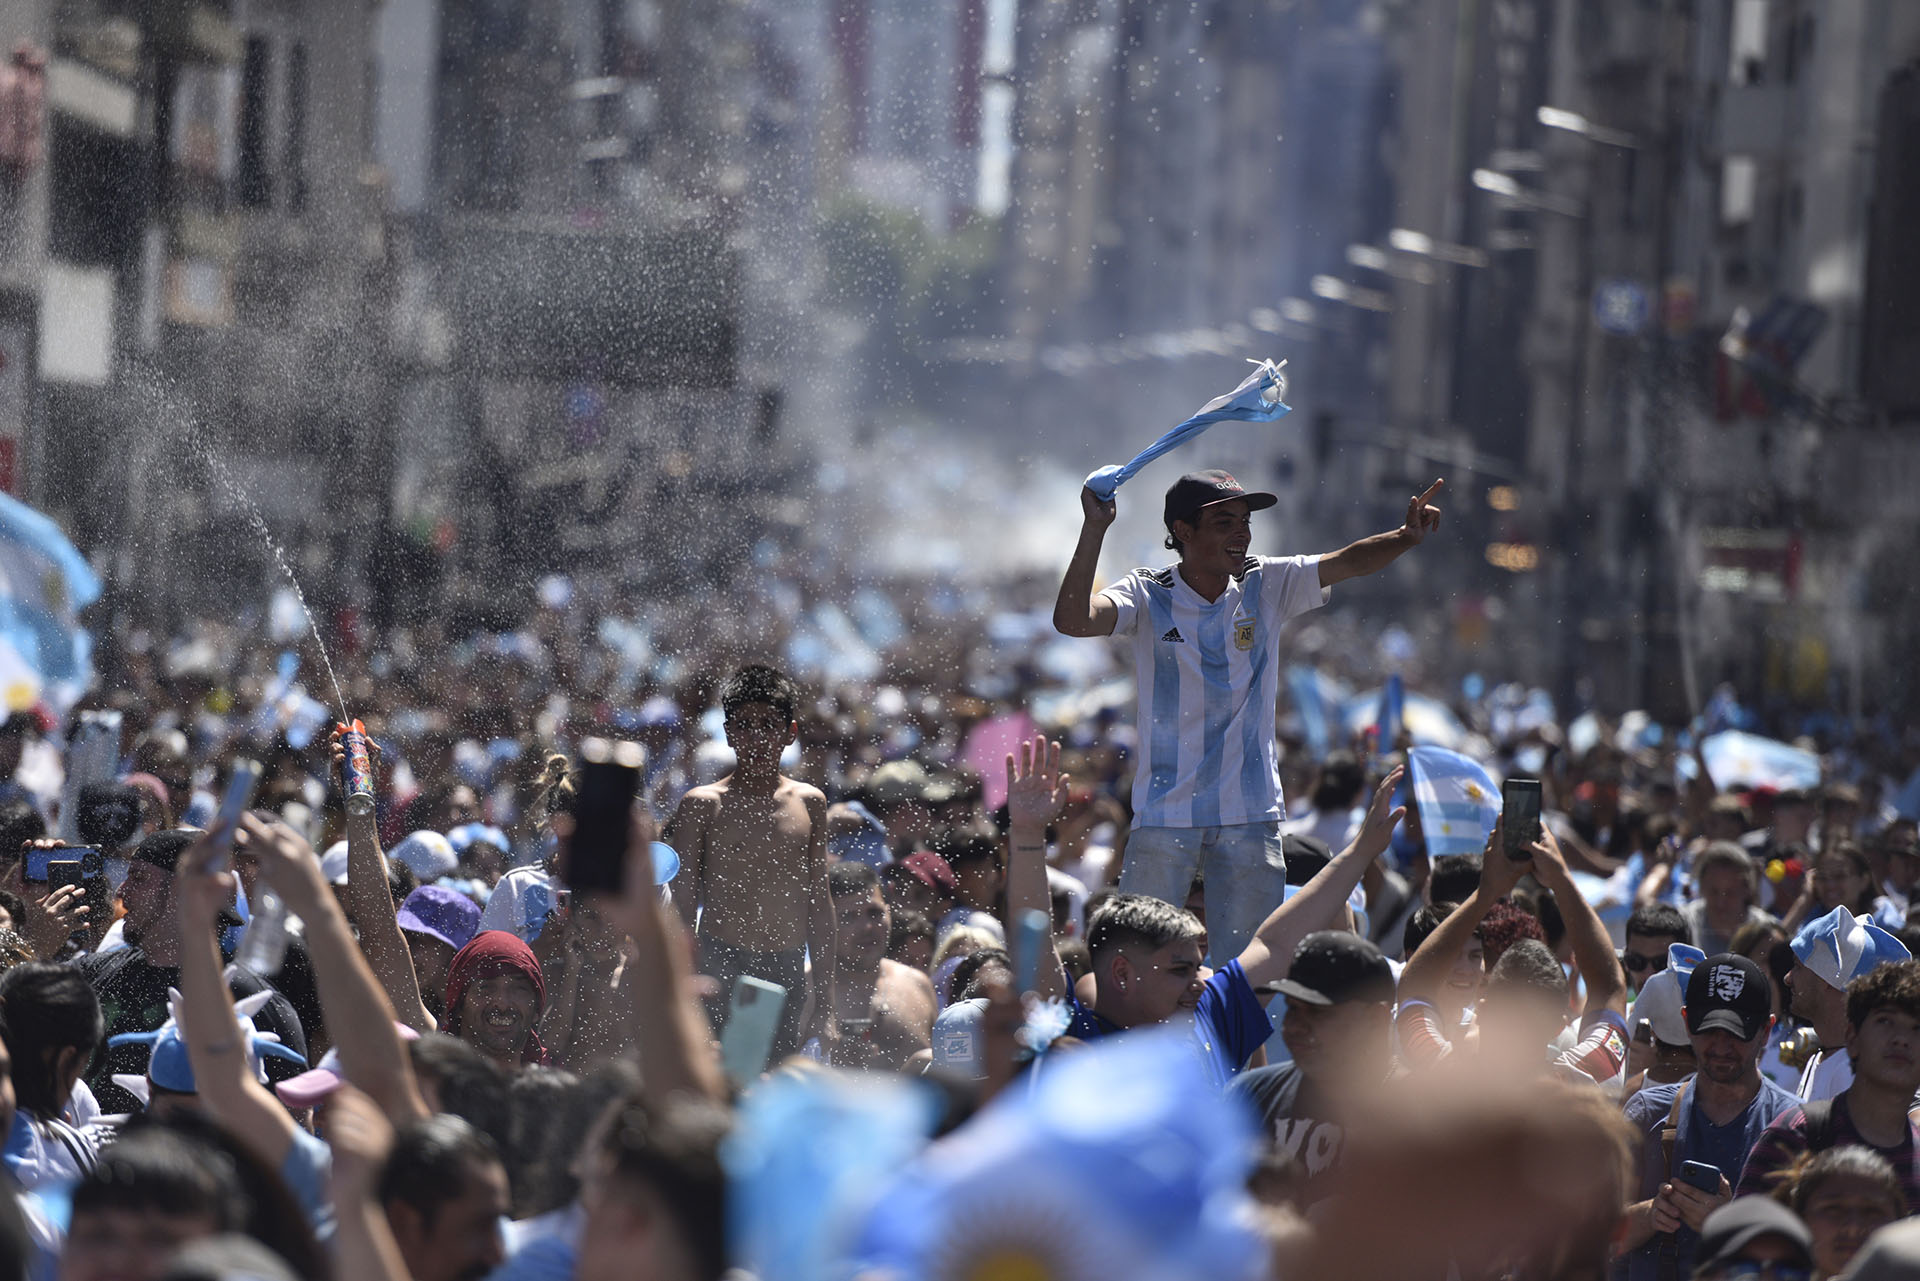 La avenida Corrientes se convirtió en una mar de gente vestida de celeste y blanco (Crédito: Adrian Escandar)